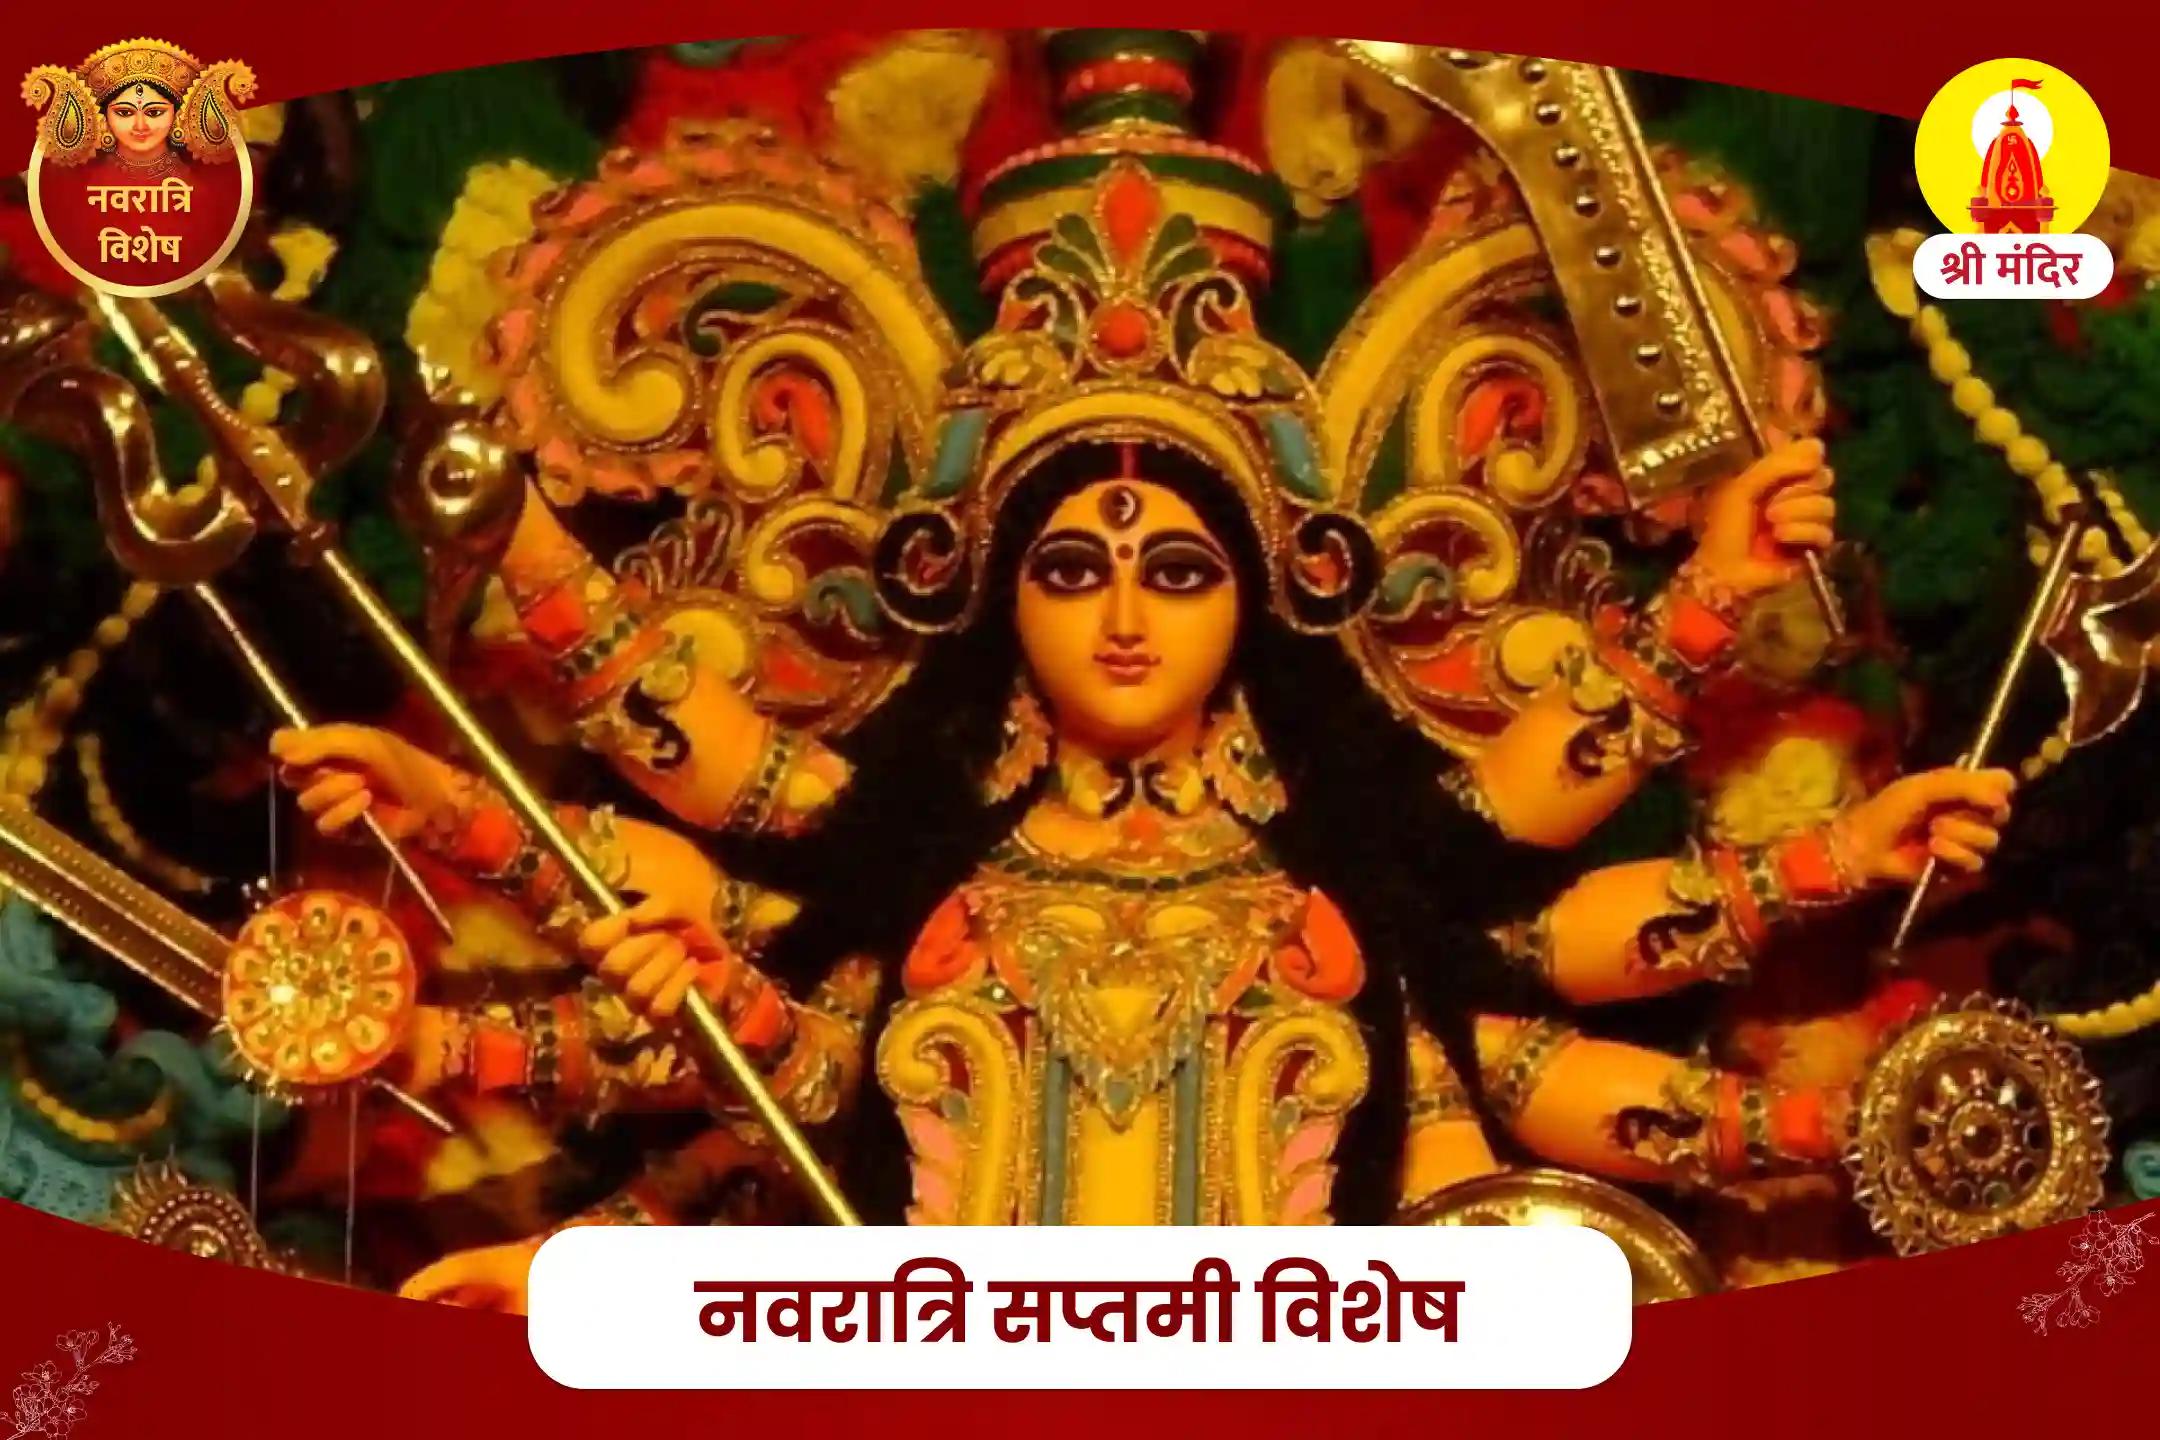 नवरात्रि सप्तमी विशेष शक्ति, सुरक्षा और मनोकामना पूर्ति के लिए आदिशक्ति अभिषेकात्मक महापूजा एवं नव दुर्गा यज्ञ